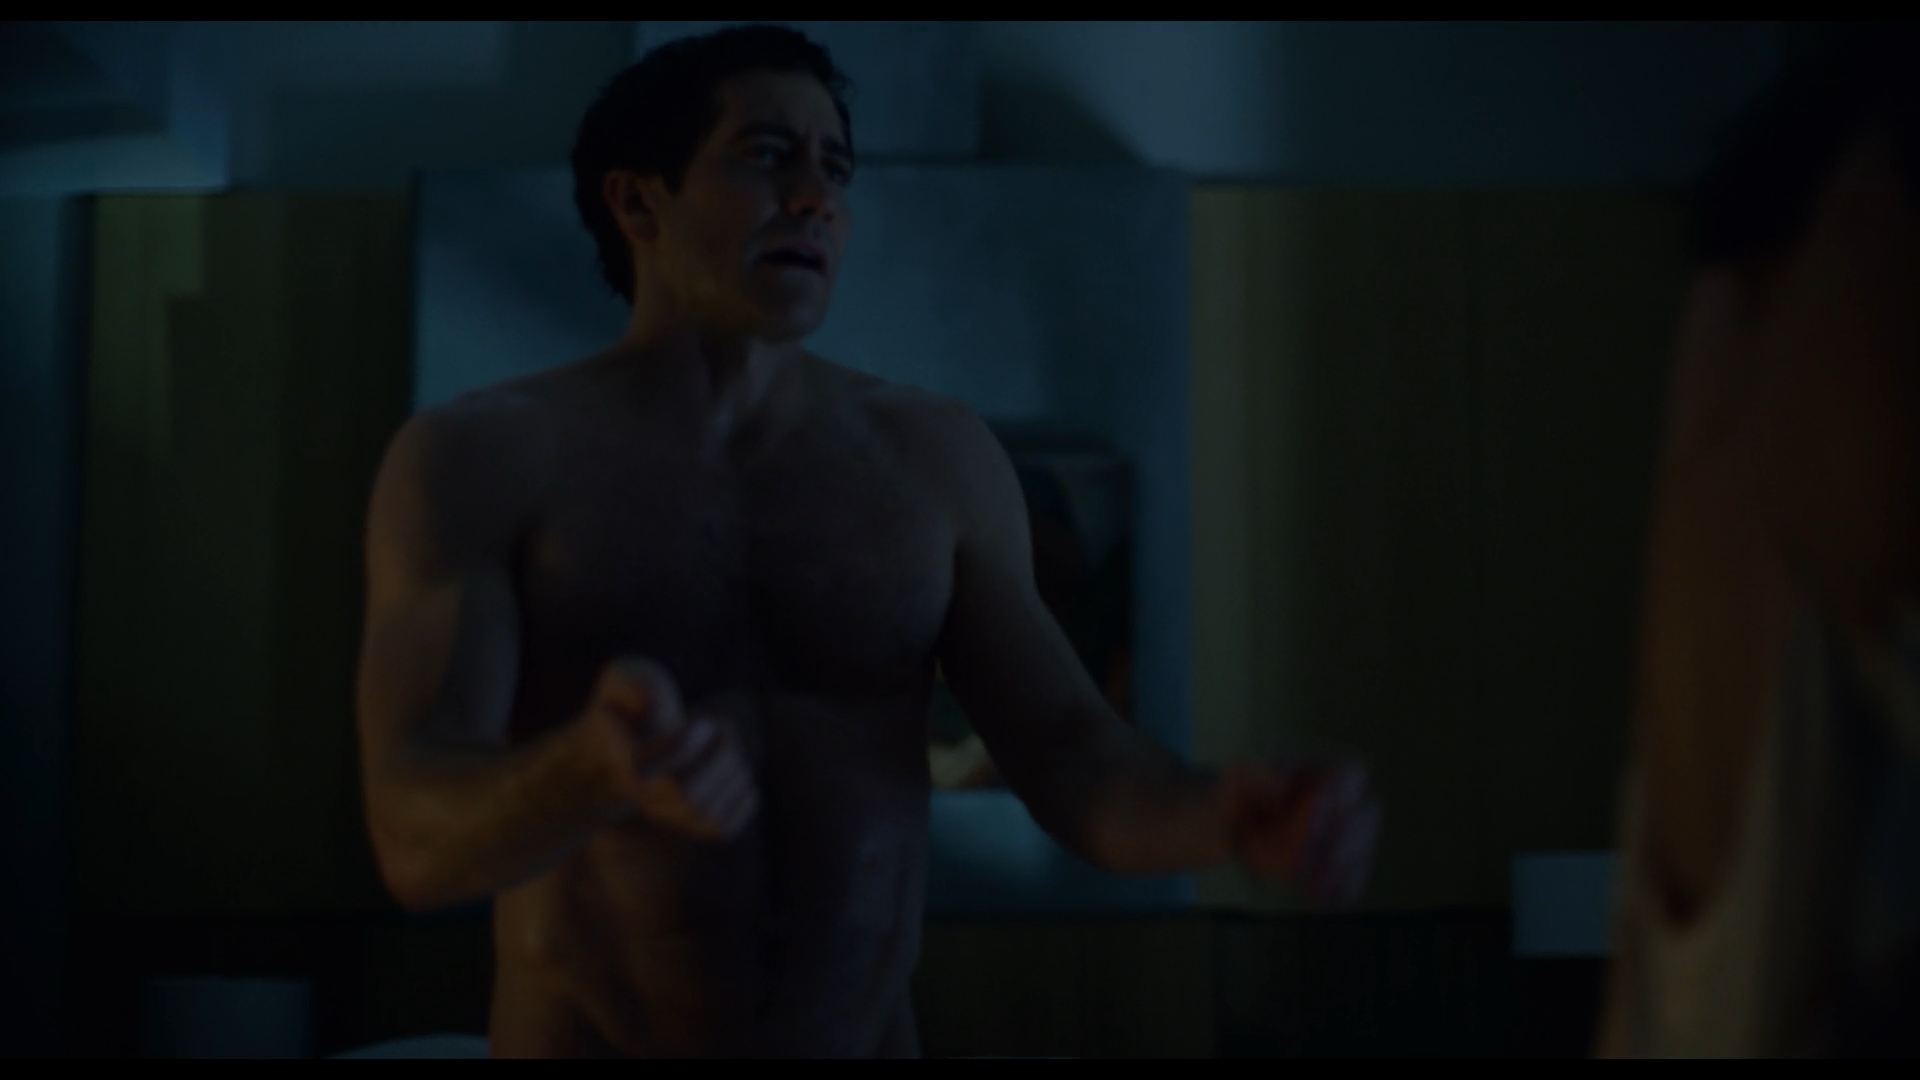 OMG, his butt: Jake Gyllenhaal in 'Velvet Buzzsaw' 